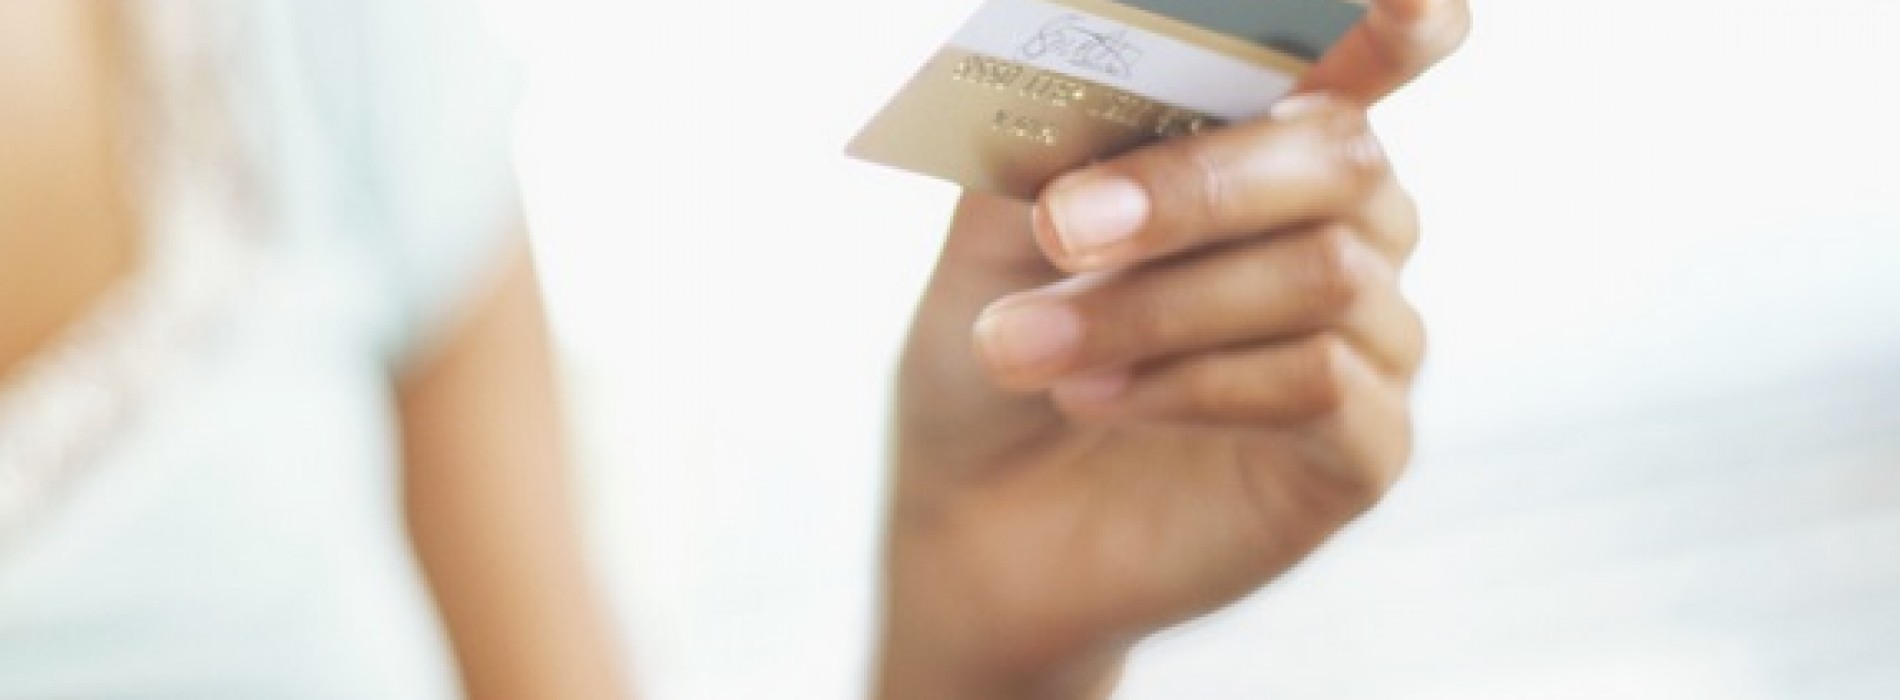 Jak optymalnie i bezpiecznie korzystać z kart płatniczych?